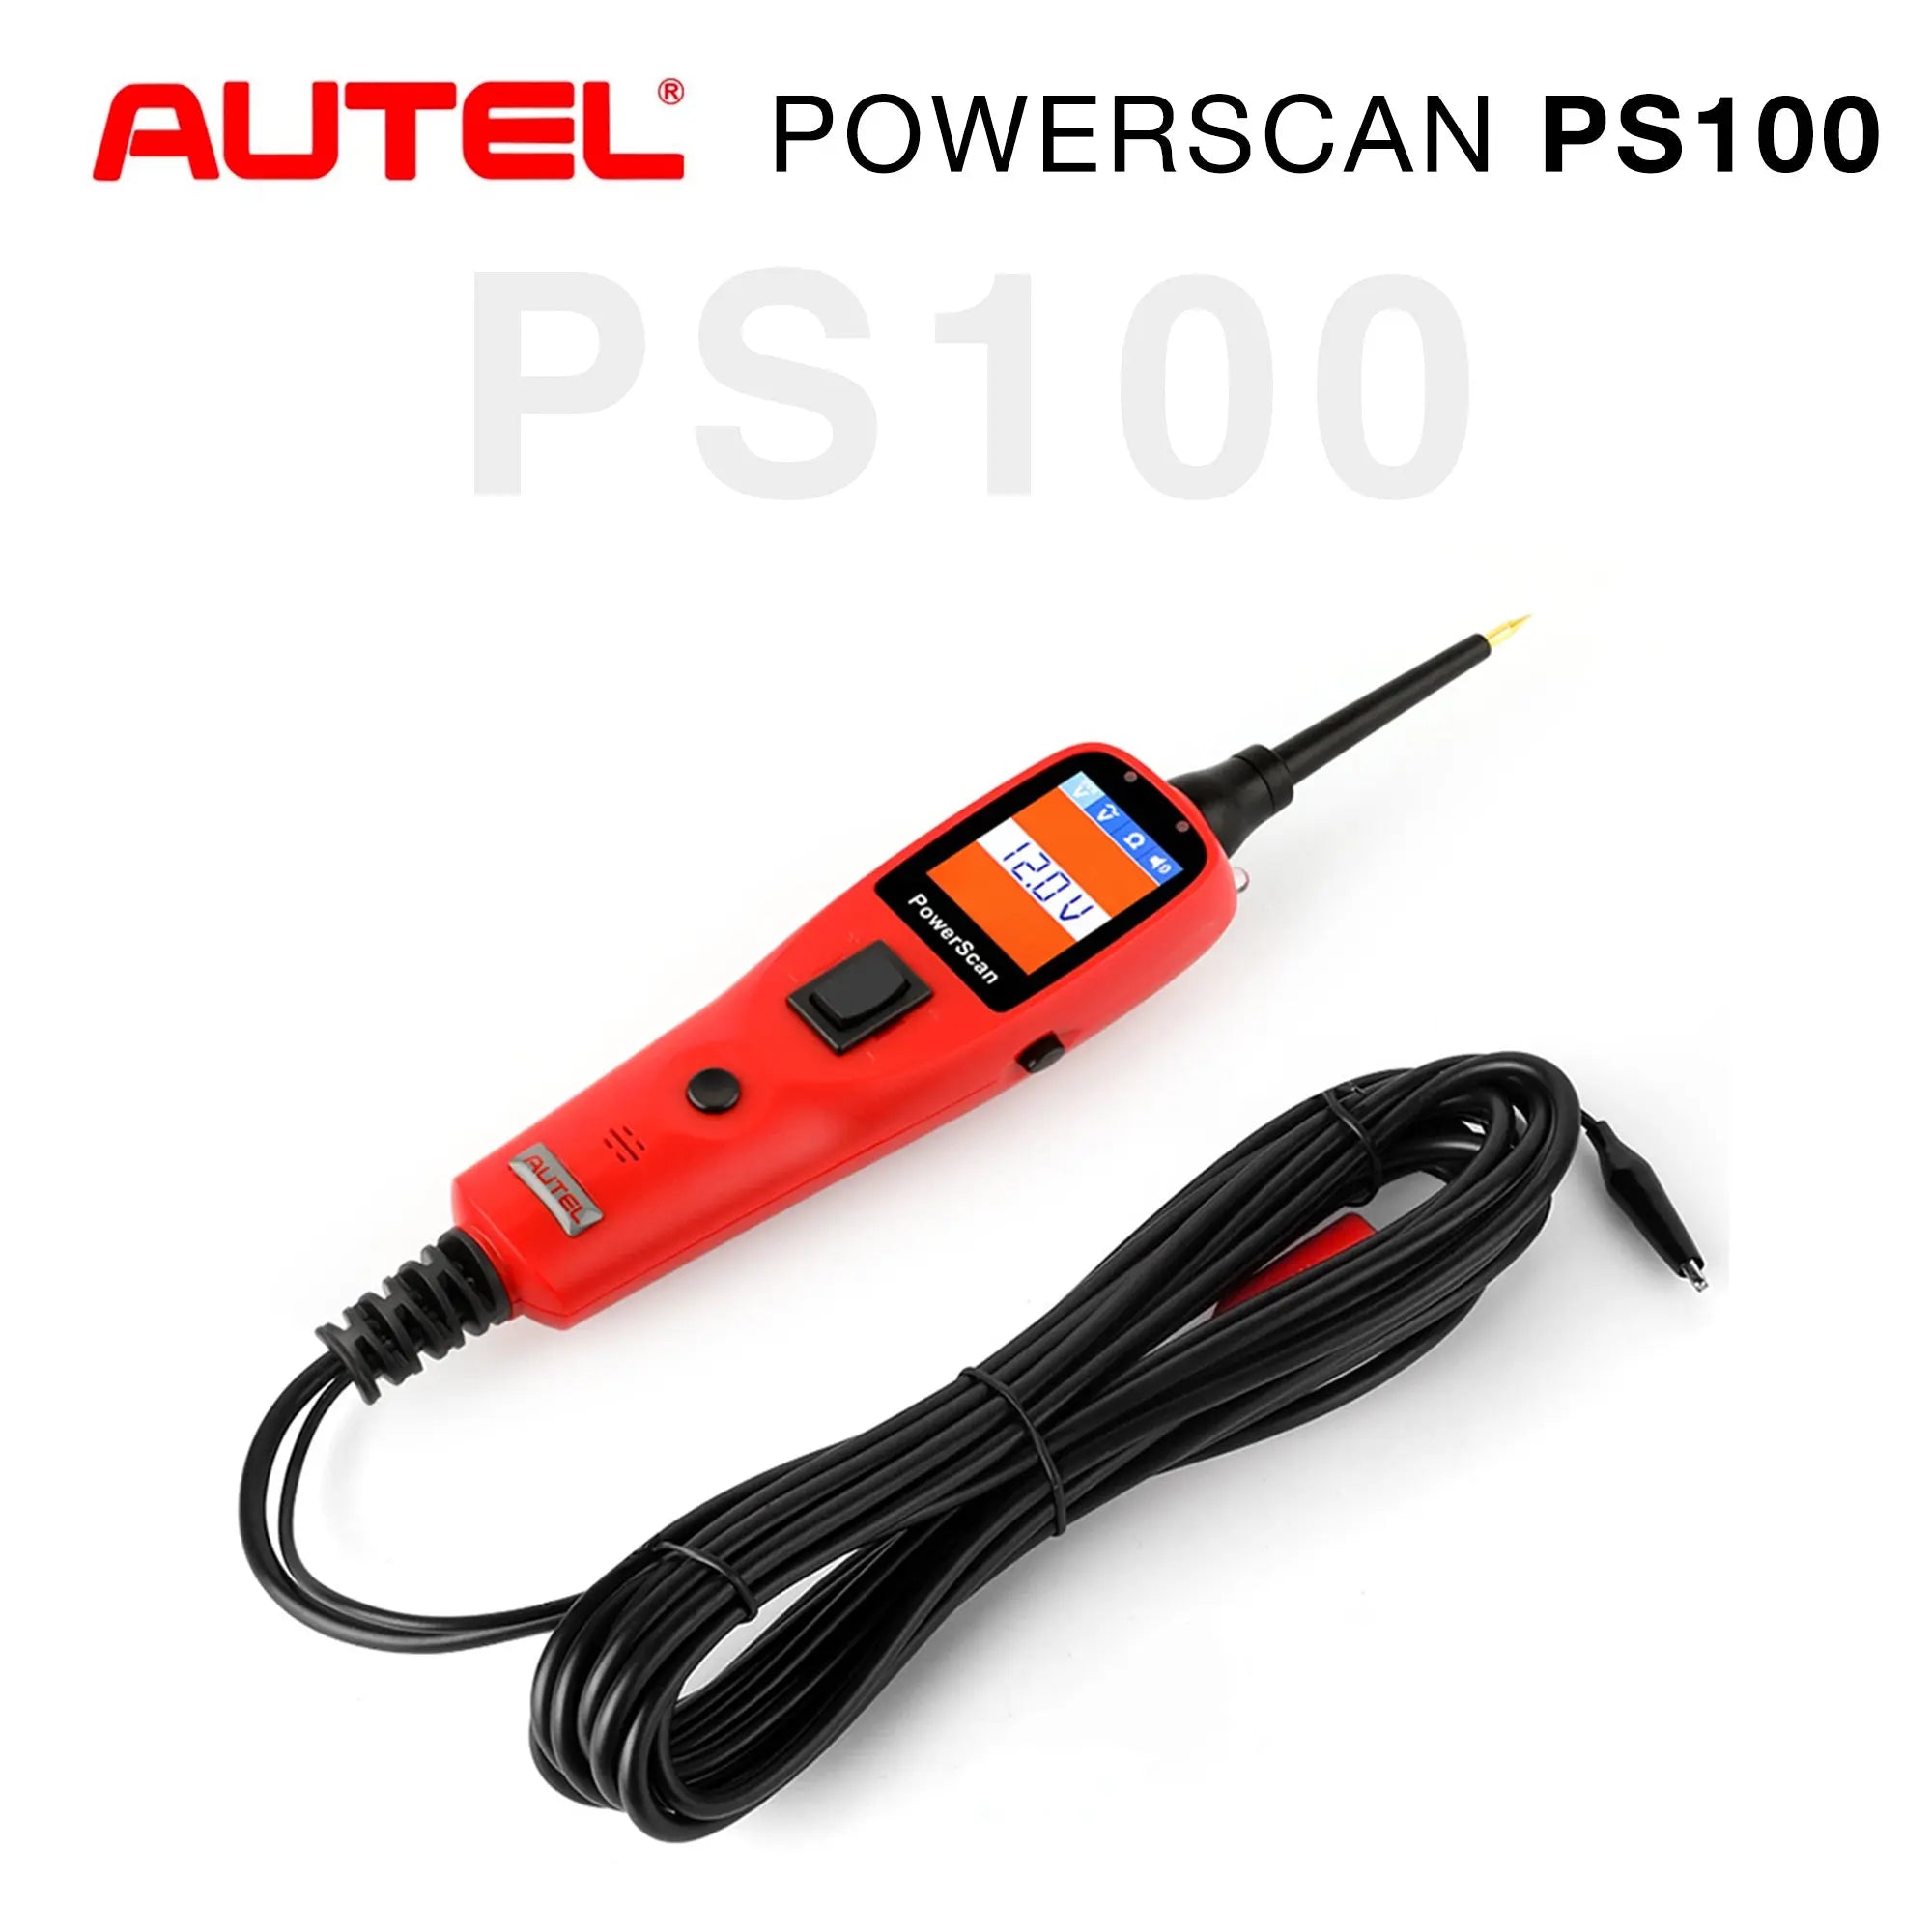 Autel PowerScan PS100 Power Circuit Probe Kit - Automotive Circuit